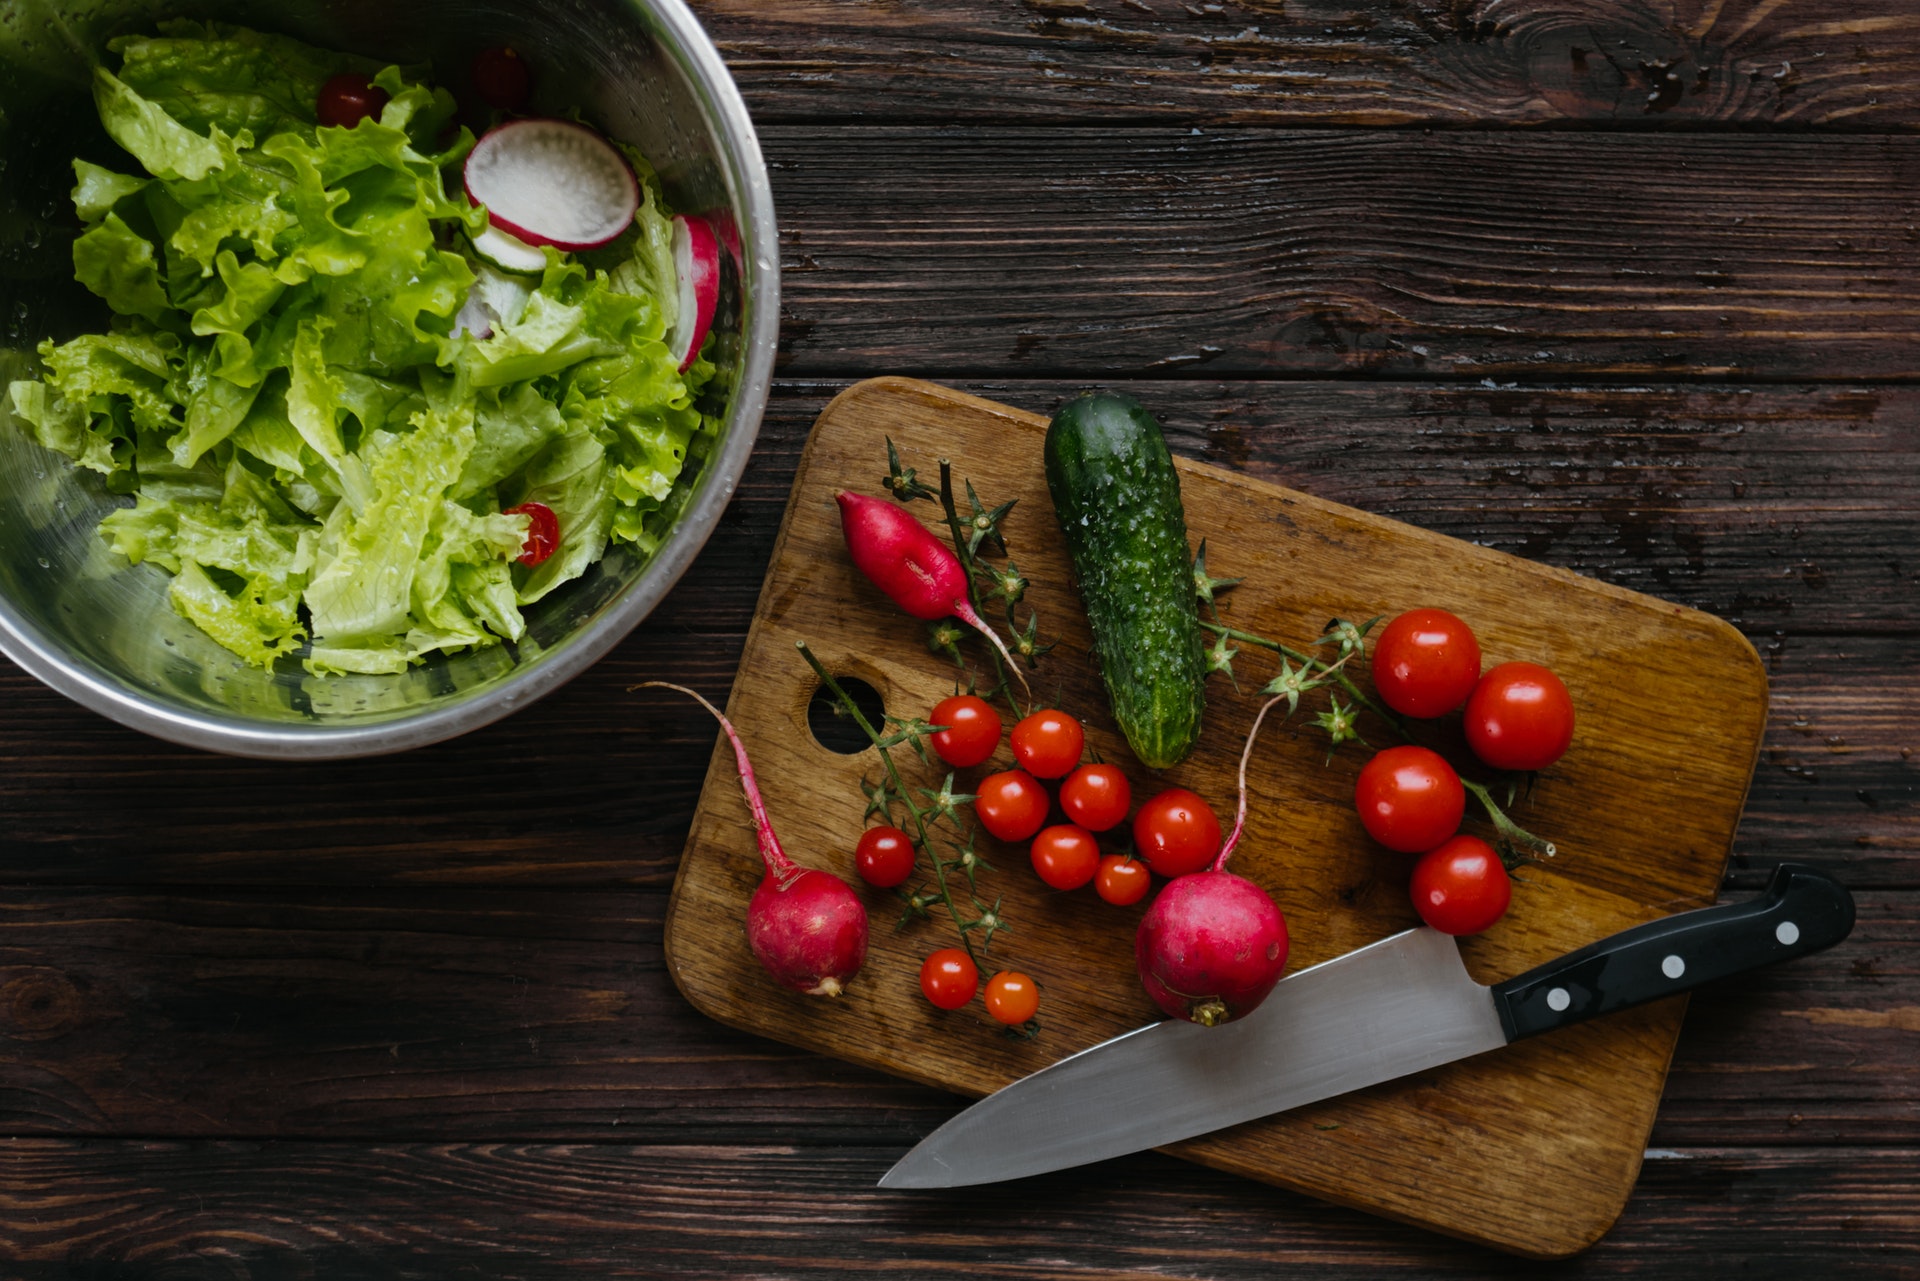 Tábua com legumes e verduras e faca